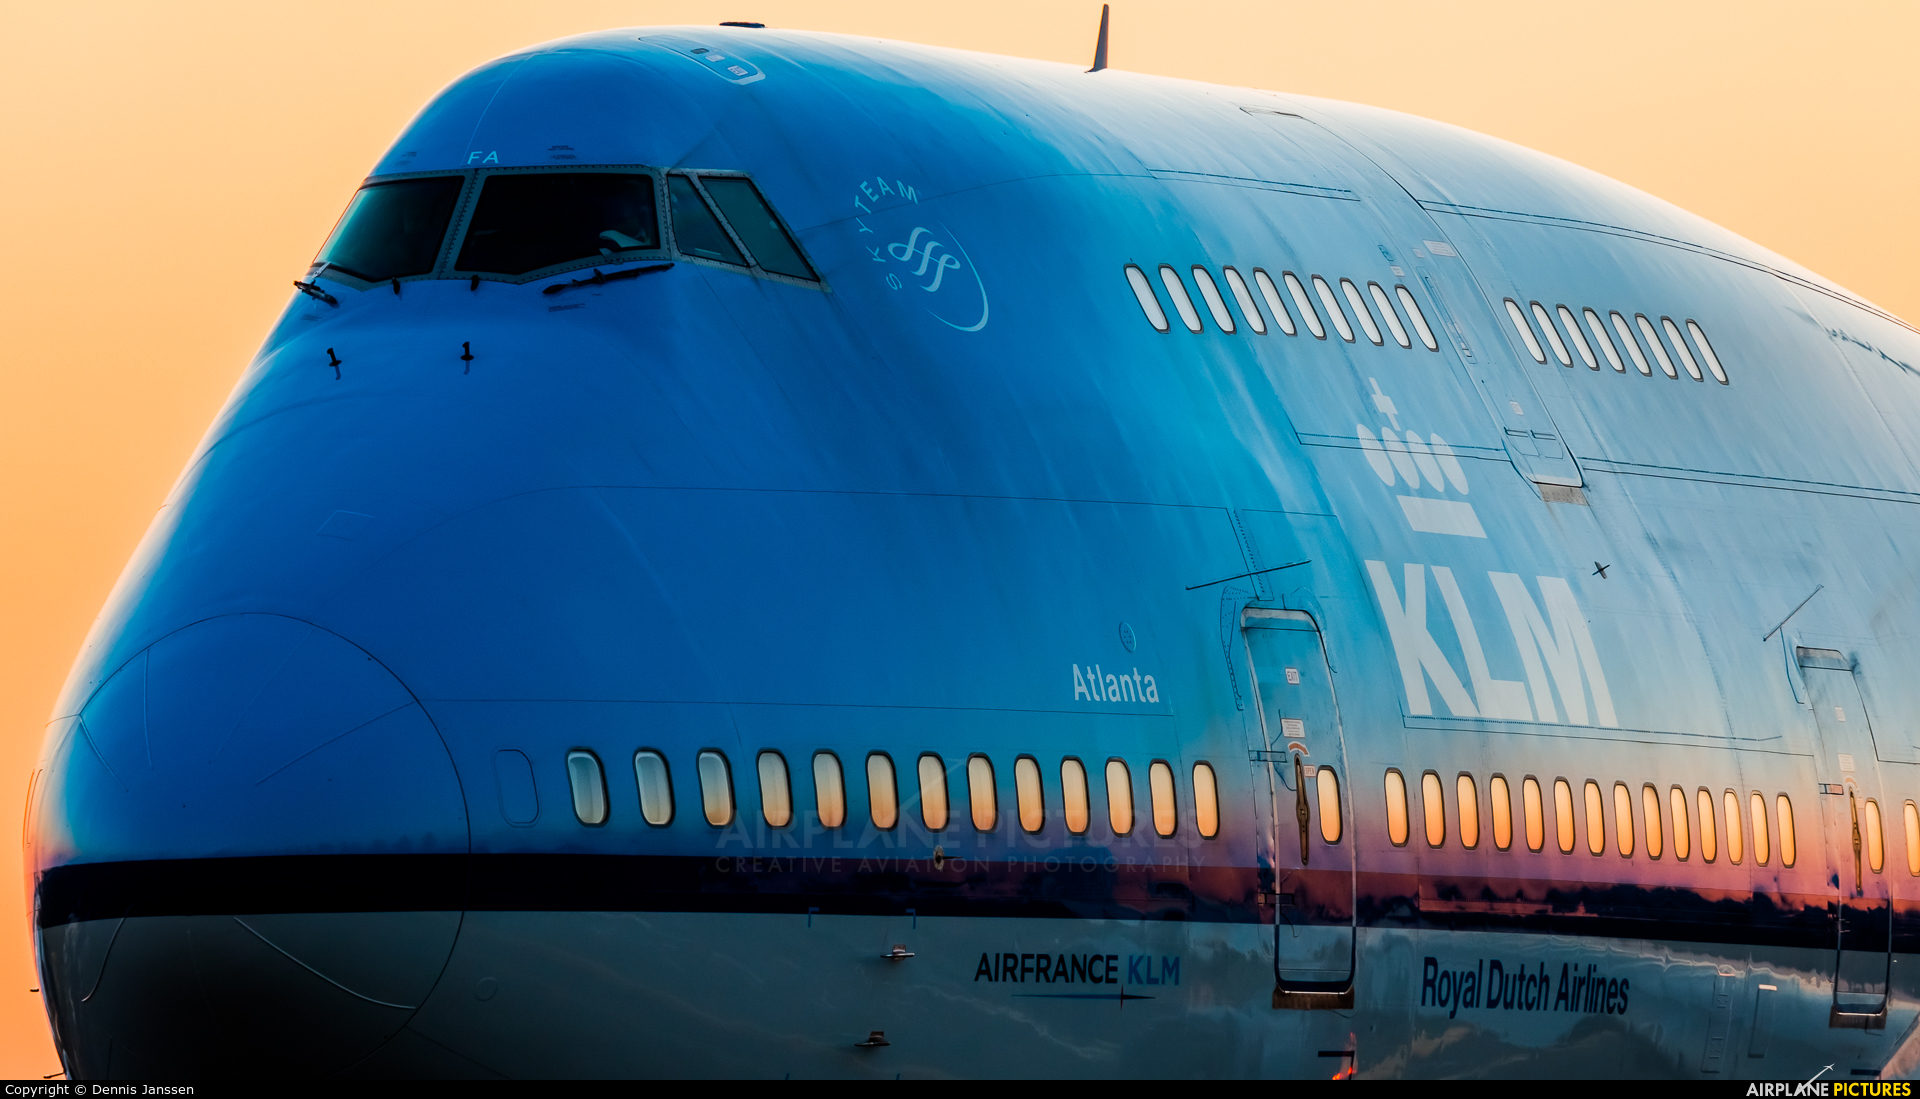 KLM PH-BFA aircraft at Amsterdam - Schiphol